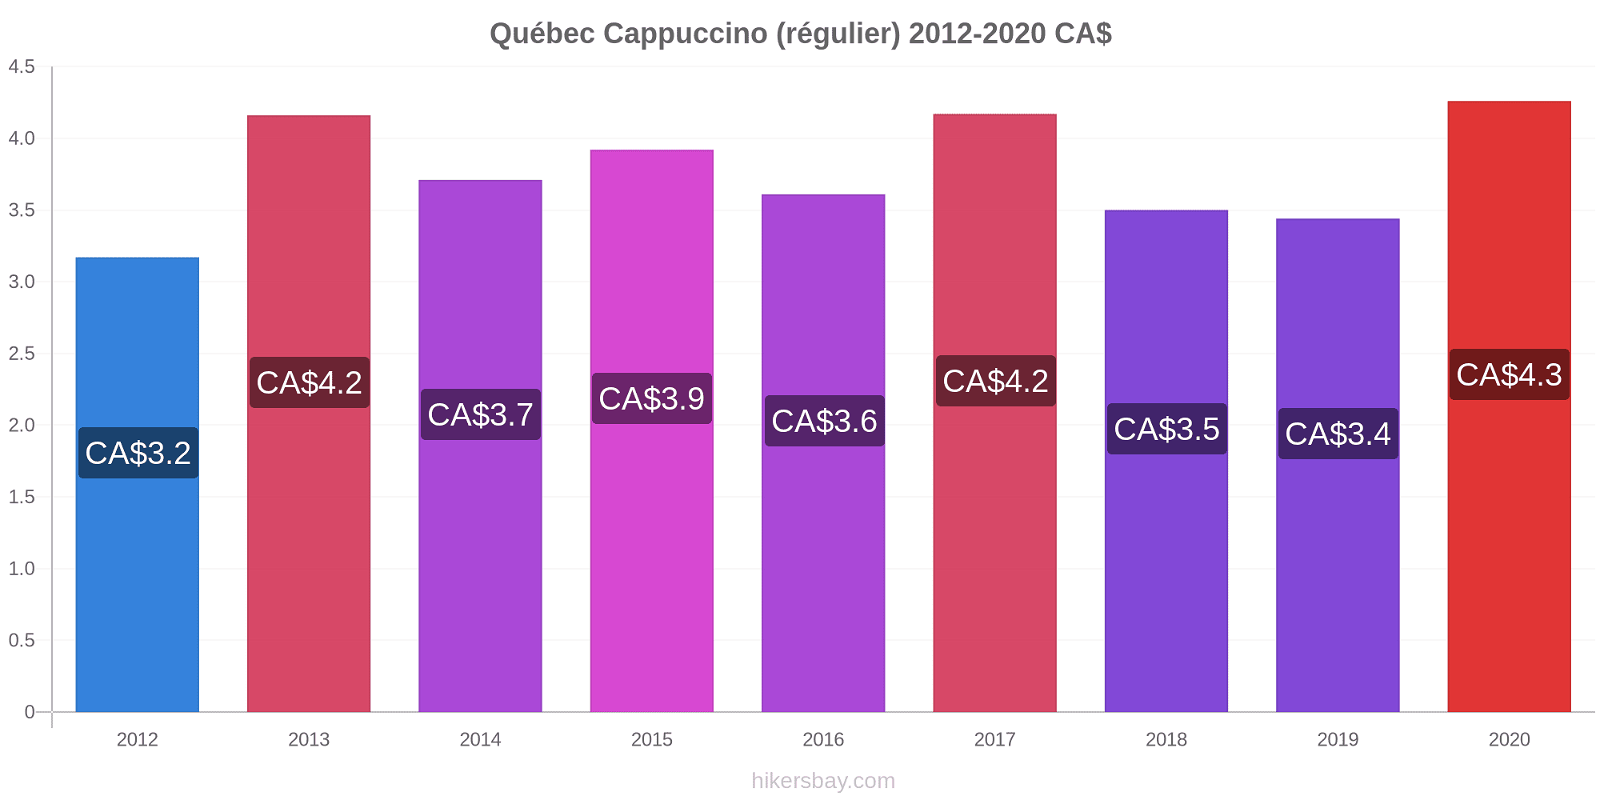 Québec changements de prix Cappuccino (régulier) hikersbay.com